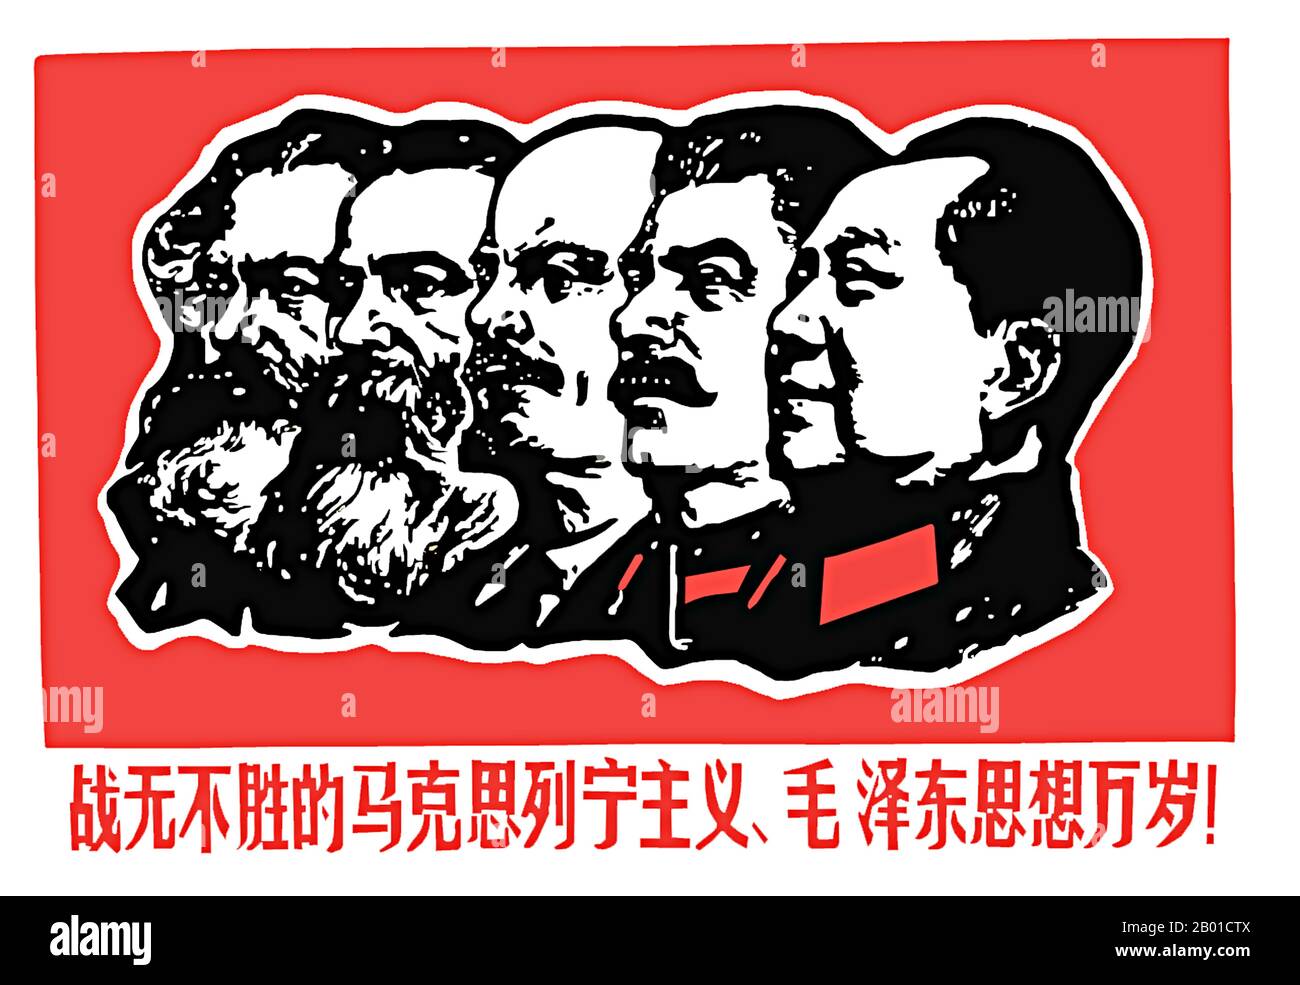 China: Póster revolucionario '¡Viva el Invencible Marxismo, el Leninismo y el Pensamiento Mao Zedong!', 1967. Un cartel revolucionario de la China comunista cerca del comienzo de la Revolución Cultural (1966-1976) con (de izquierda a derecha): Karl Marx, Friedrich Engels, Vladimir Ilych Lenin, Joseph Stalin y Mao Zedong. El 'Pensamiento Mao Zedong', generalmente abreviado como 'maoísmo', jugó un papel central en la política de la 'Gran Revolución Cultural Proletaria' y se refleja más en el 'Pequeño Libro Rojo'. Foto de stock